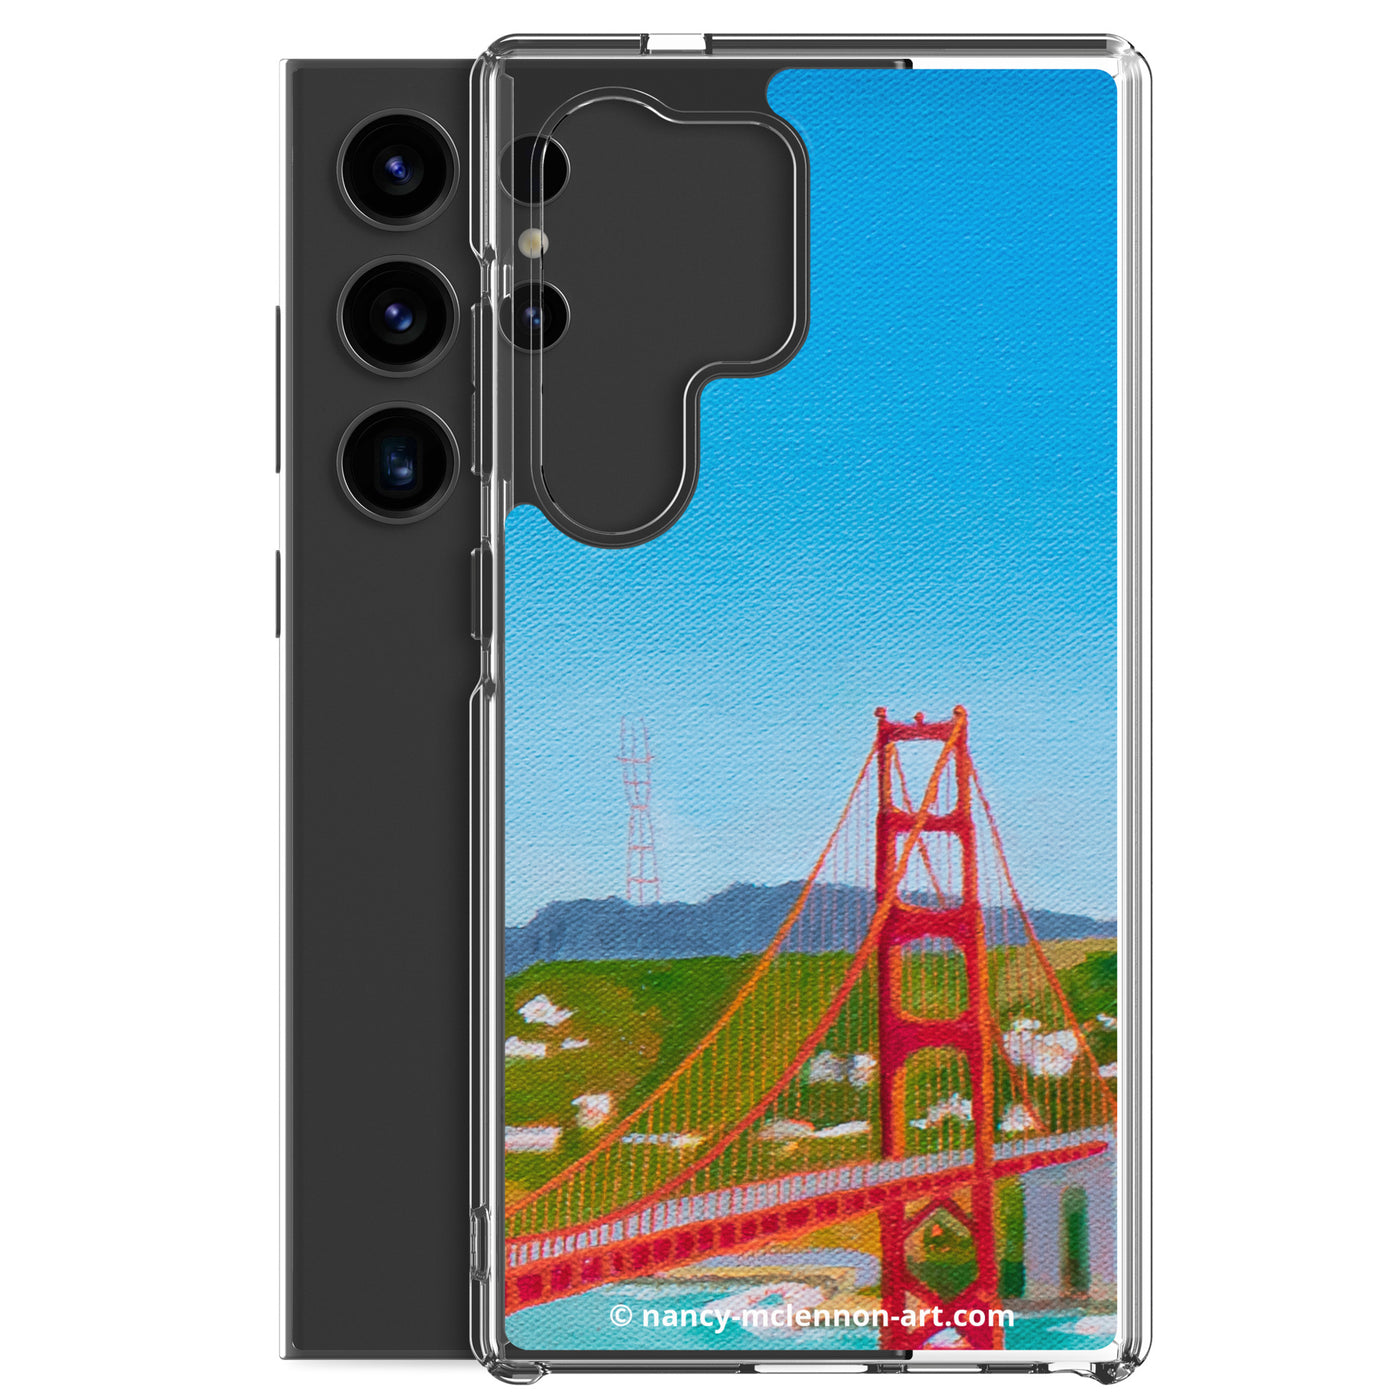 Samsung® Case - Golden Gate Bridge South Tower